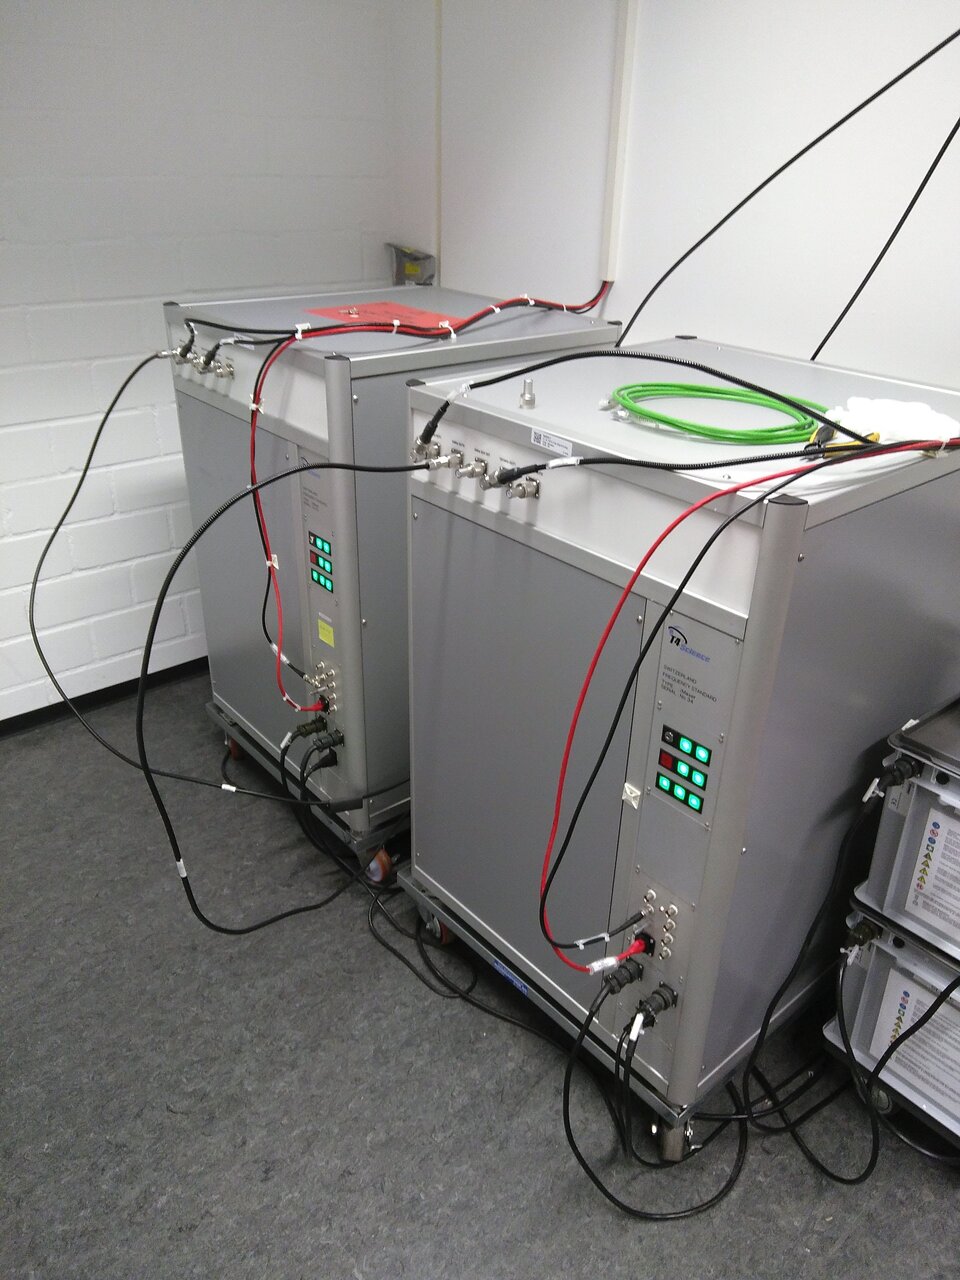 Δύο «μέιζερ ενεργού υδρογόνου» είναι εγκατεστημένα σε μια ειδική αίθουσα μέιζερ ελεγχόμενης θερμοκρασίας και υγρασίας στο ESOC. Τα μέιζερ παράγουν «συνεκτικά» ηλεκτρομαγνητικά κύματα και χρησιμοποιούνται ως συσκευή μέτρησης χρόνου στα ατομικά ρολόγια.